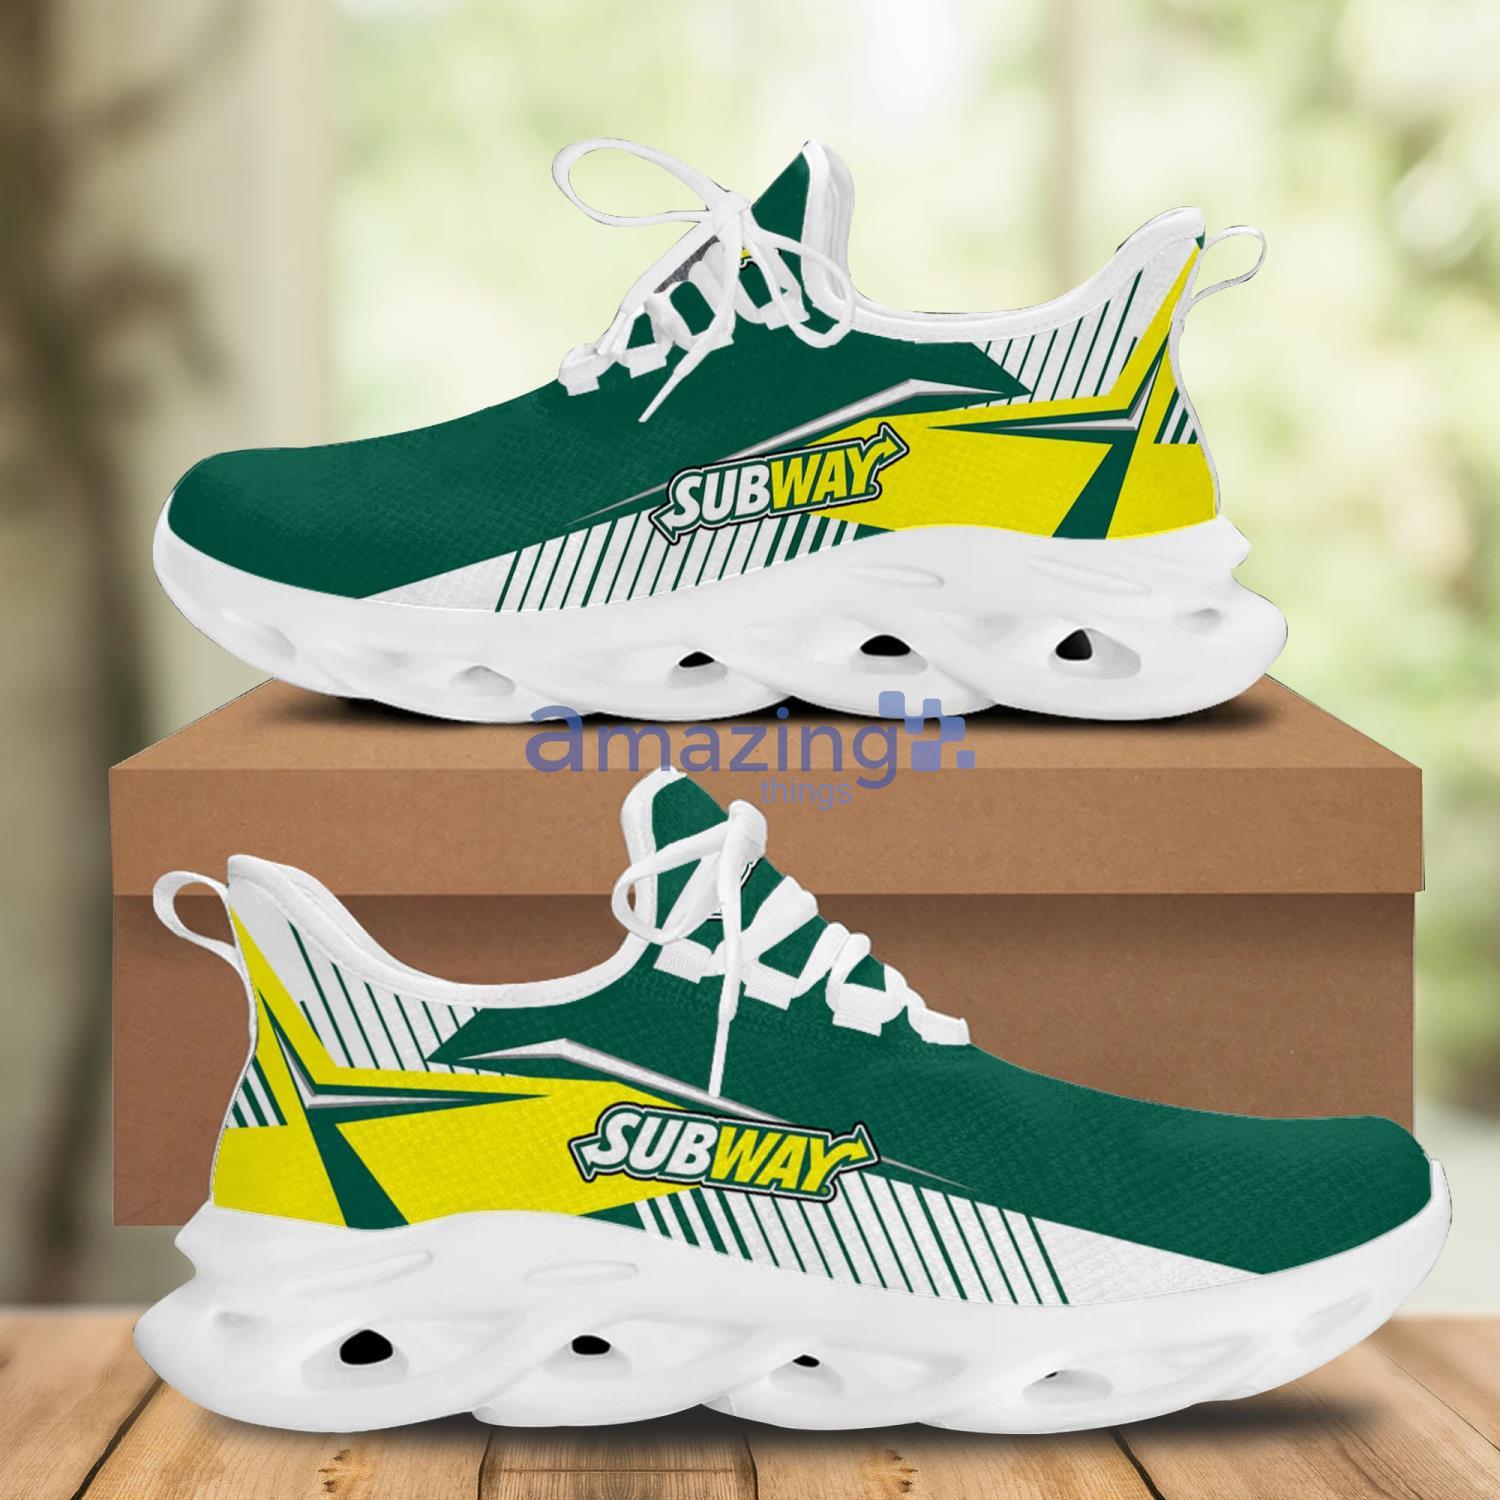 Chunky Sneakers - Bloomingdale's-vinhomehanoi.com.vn